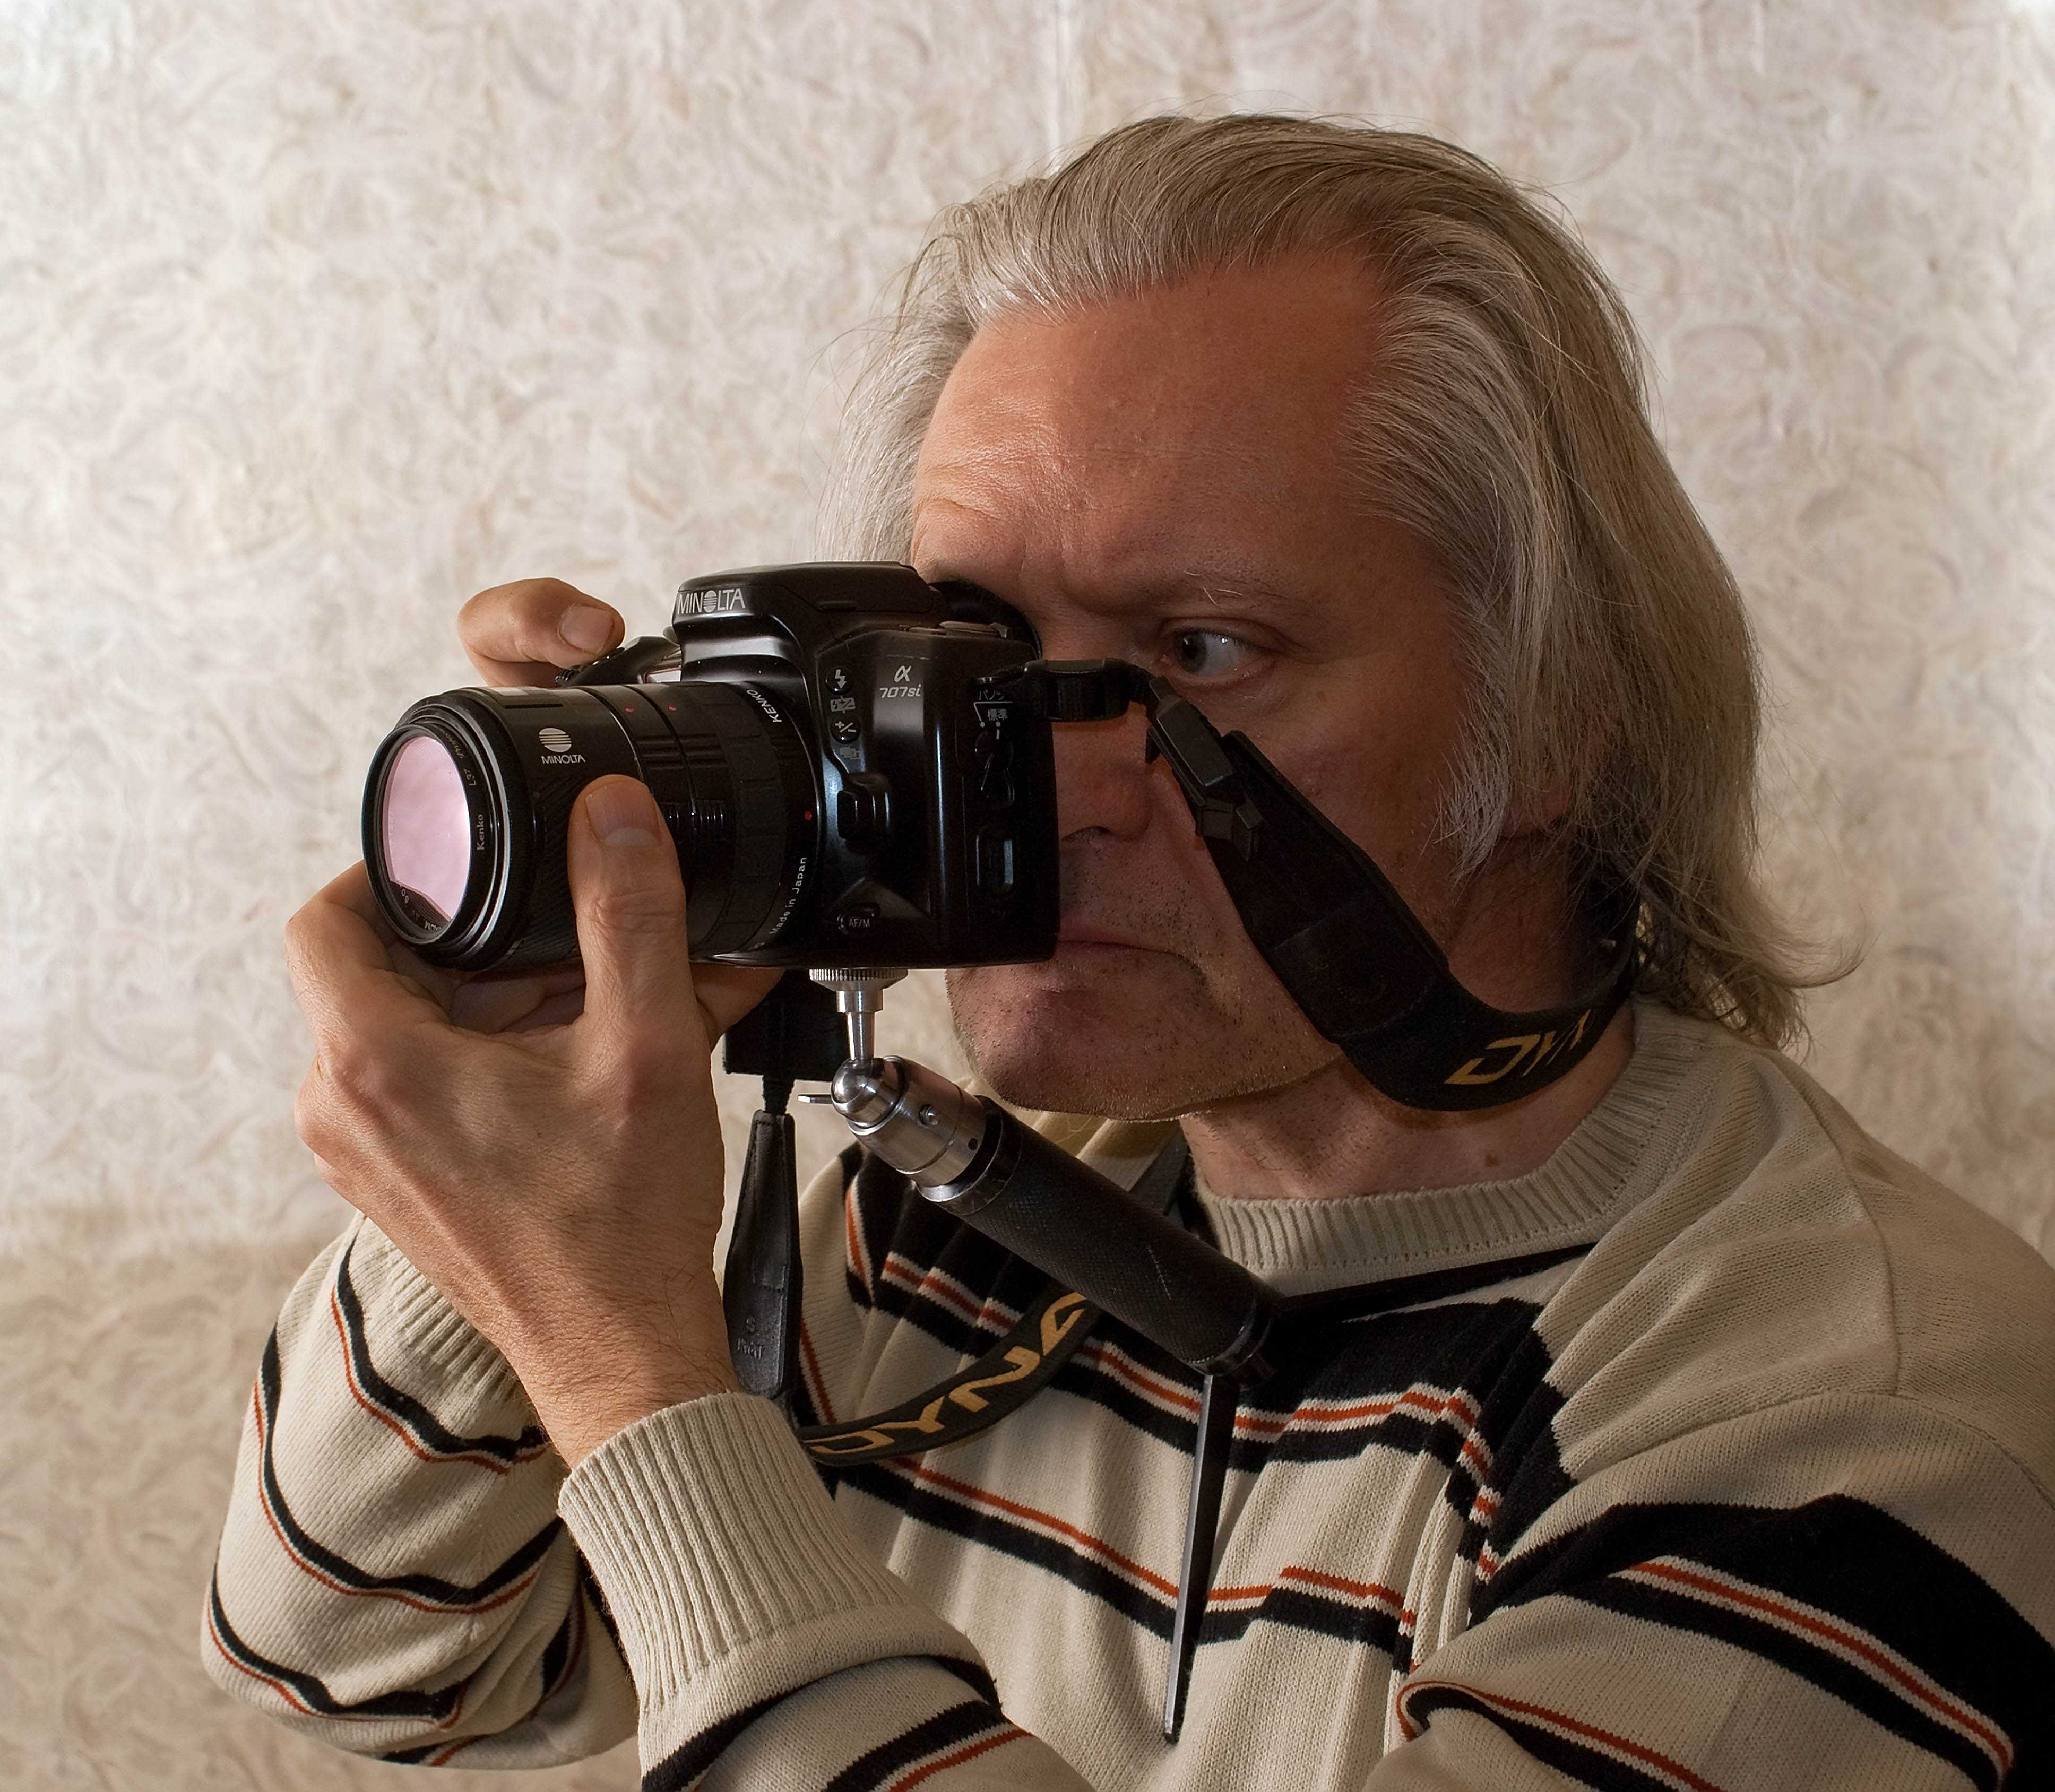 Как выбрать зеркальный фотоаппарат для начинающего фотографа: важные характеристики